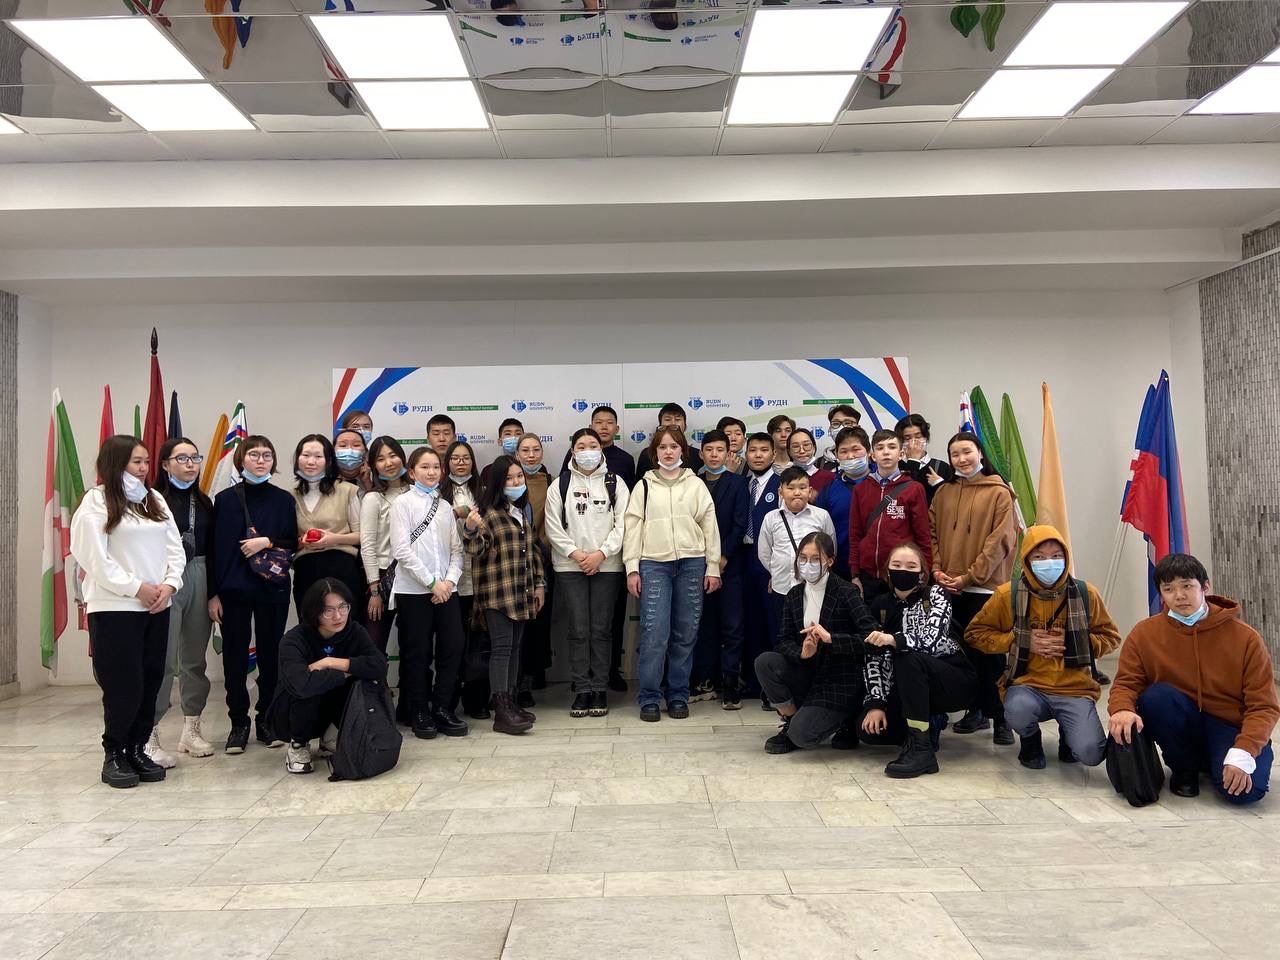 20 марта 2021 года Экономическим факультетом совместно с Институтом мировой экономики и бизнеса была проведена профориентационная экскурсия для 37 учащихся Восточно-Сибирского лицея Республики Саха (Якутия).